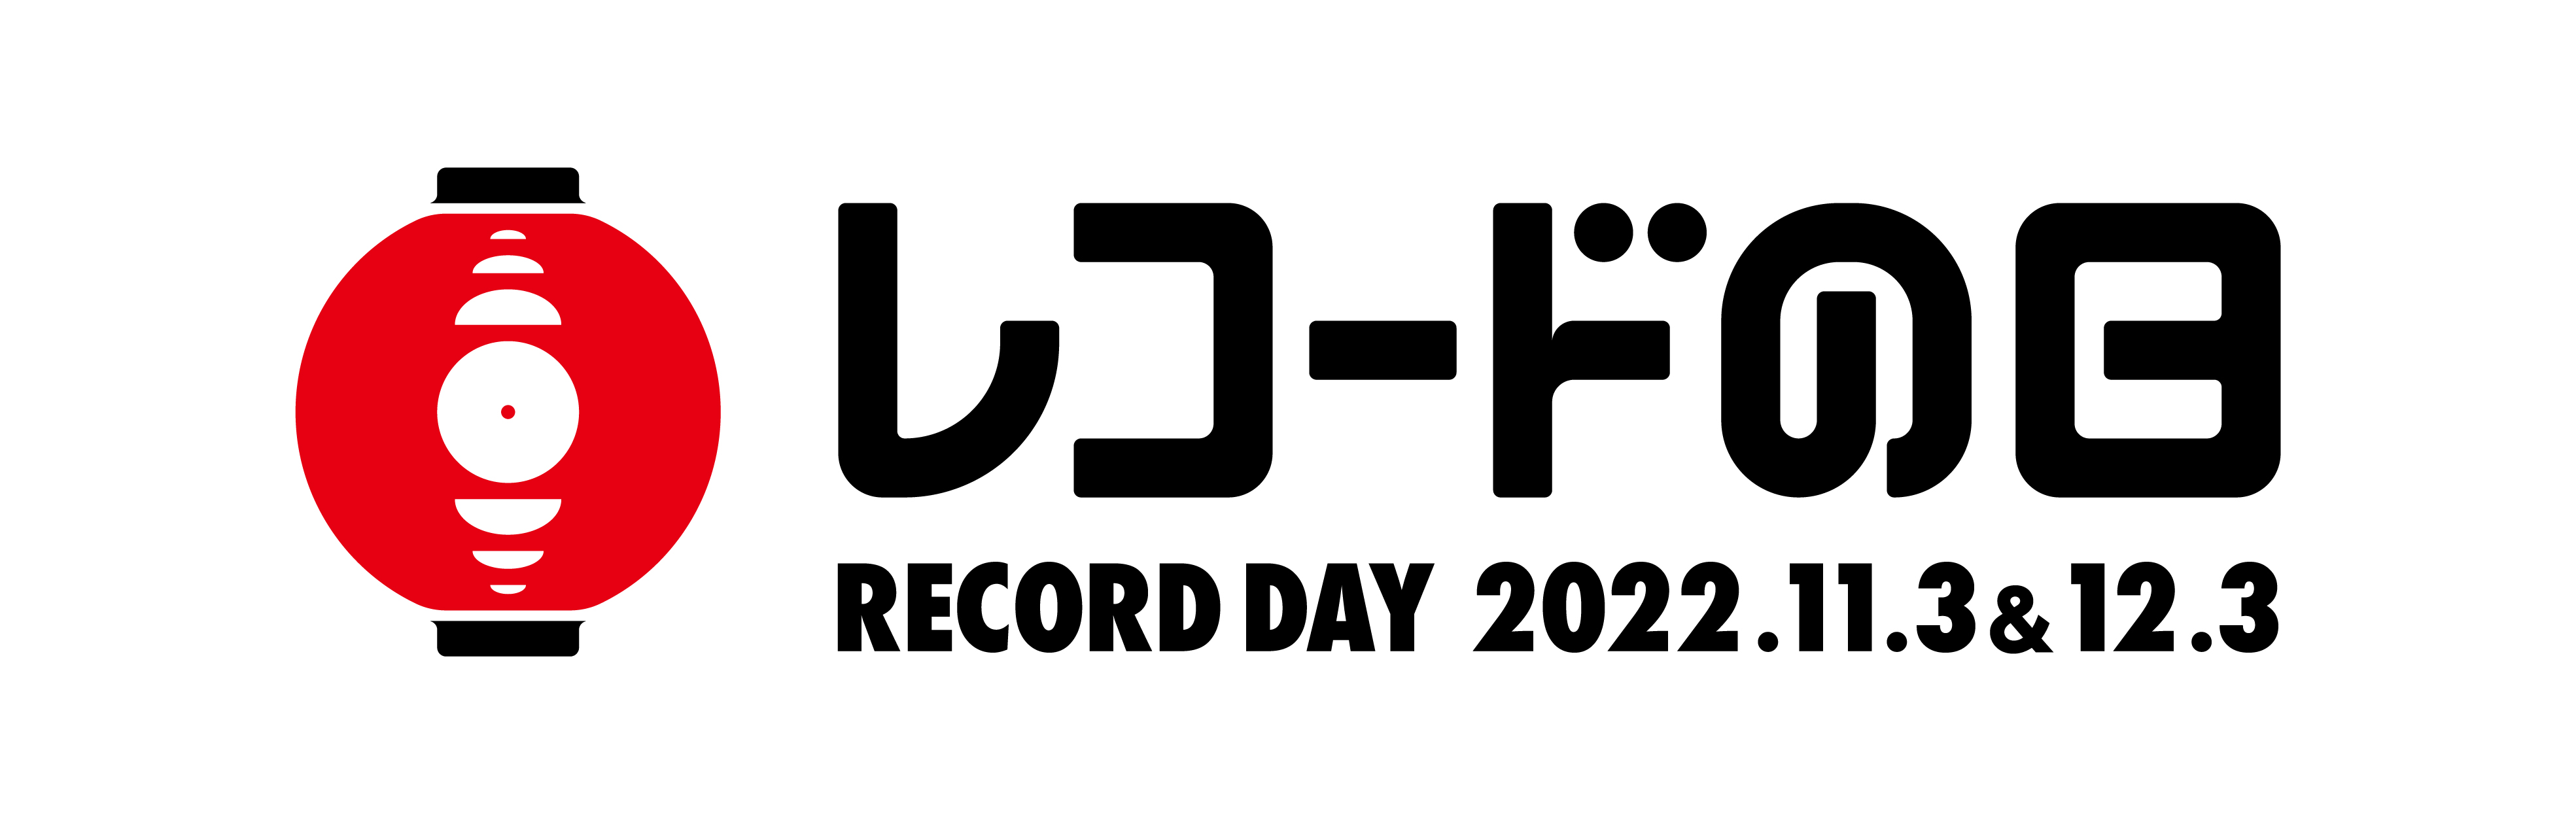 2022_recobi_logo_FIX.jpg